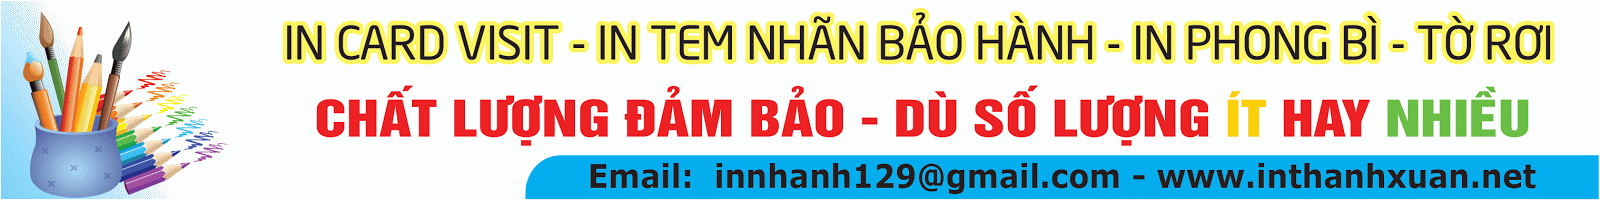 banner-innhanh-129-2